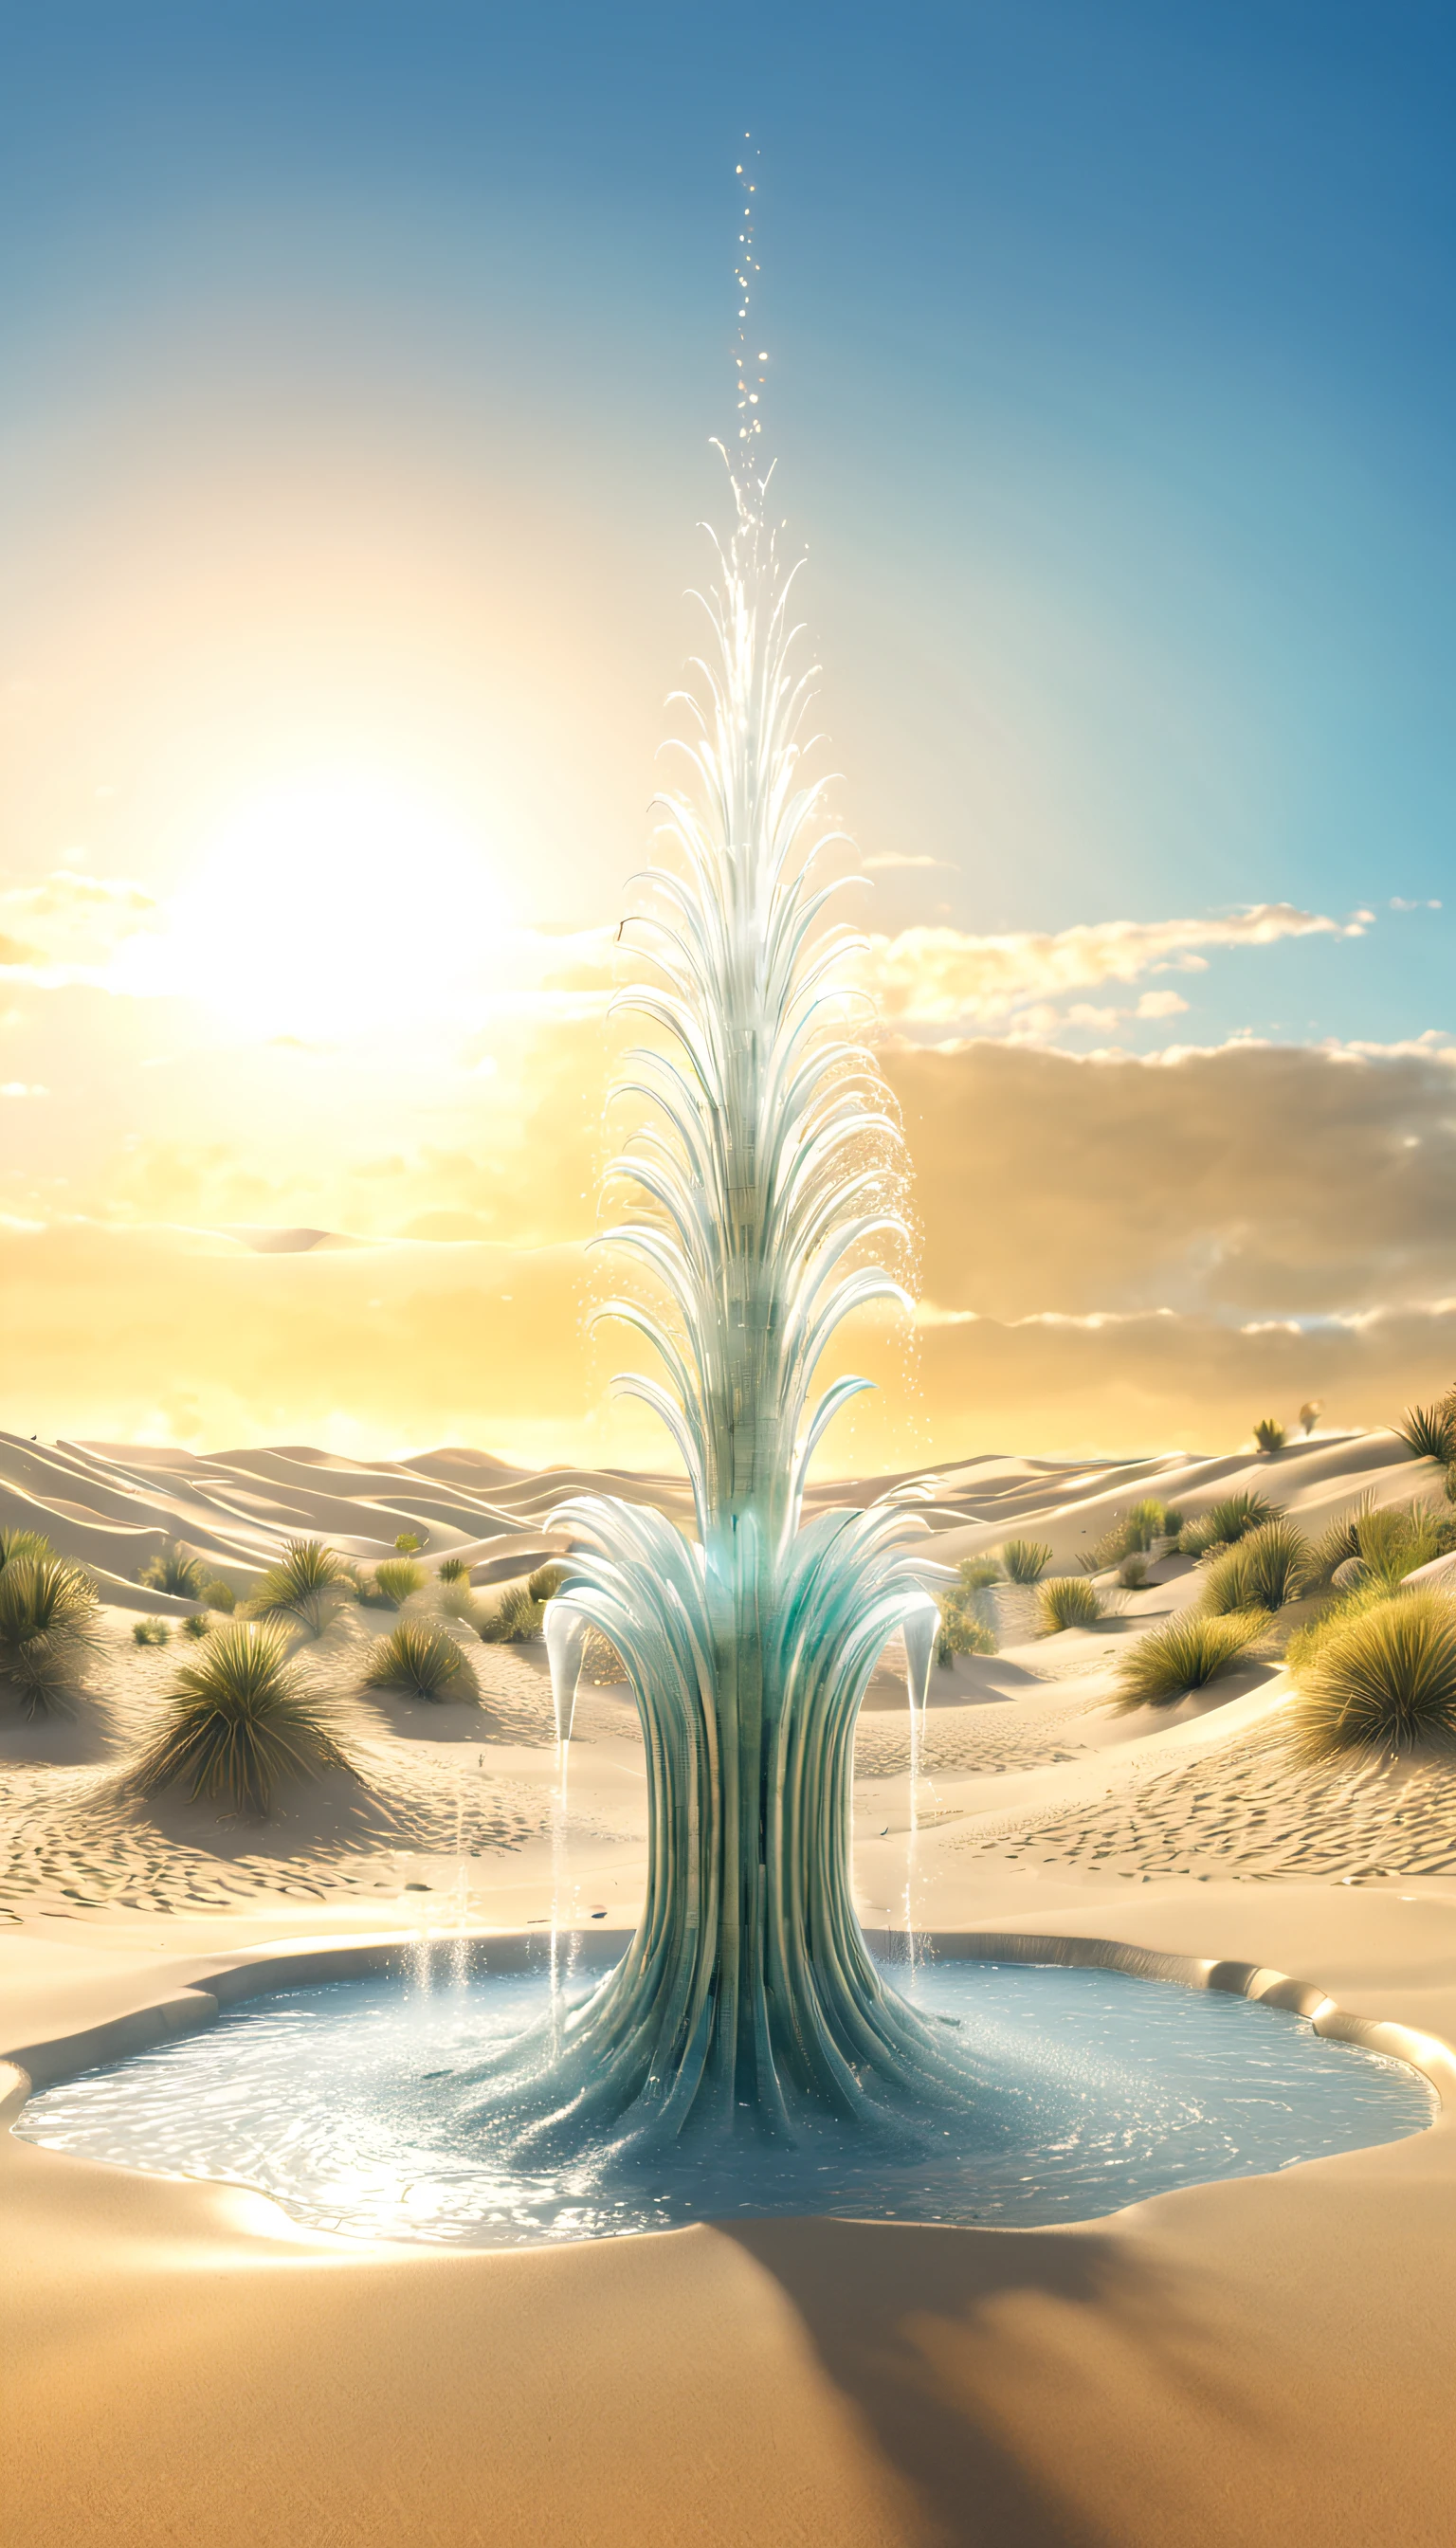 representación 3d surrealista，Gran fuente cibernética representada en las dunas., Grifo con forma de cactus rocía agua, rociado con agua，Marismas,etéreo，súper fantasía ，
Fondo con：dunas de arena desoladas，el sol poniente，pata de camello，